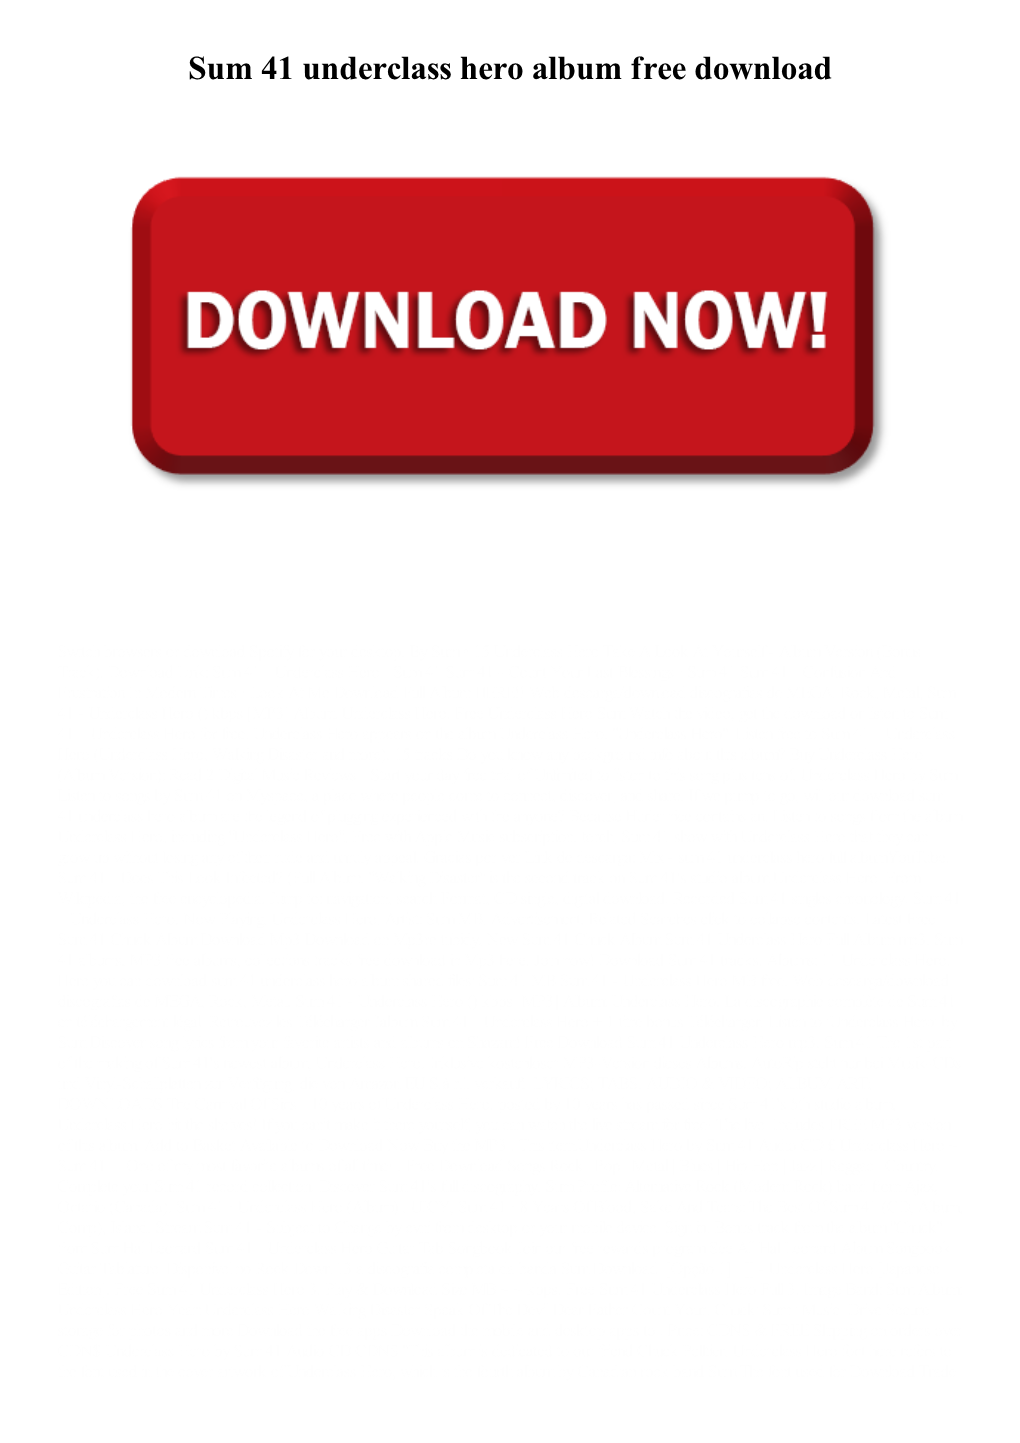 Sum 41 Underclass Hero Album Free Download